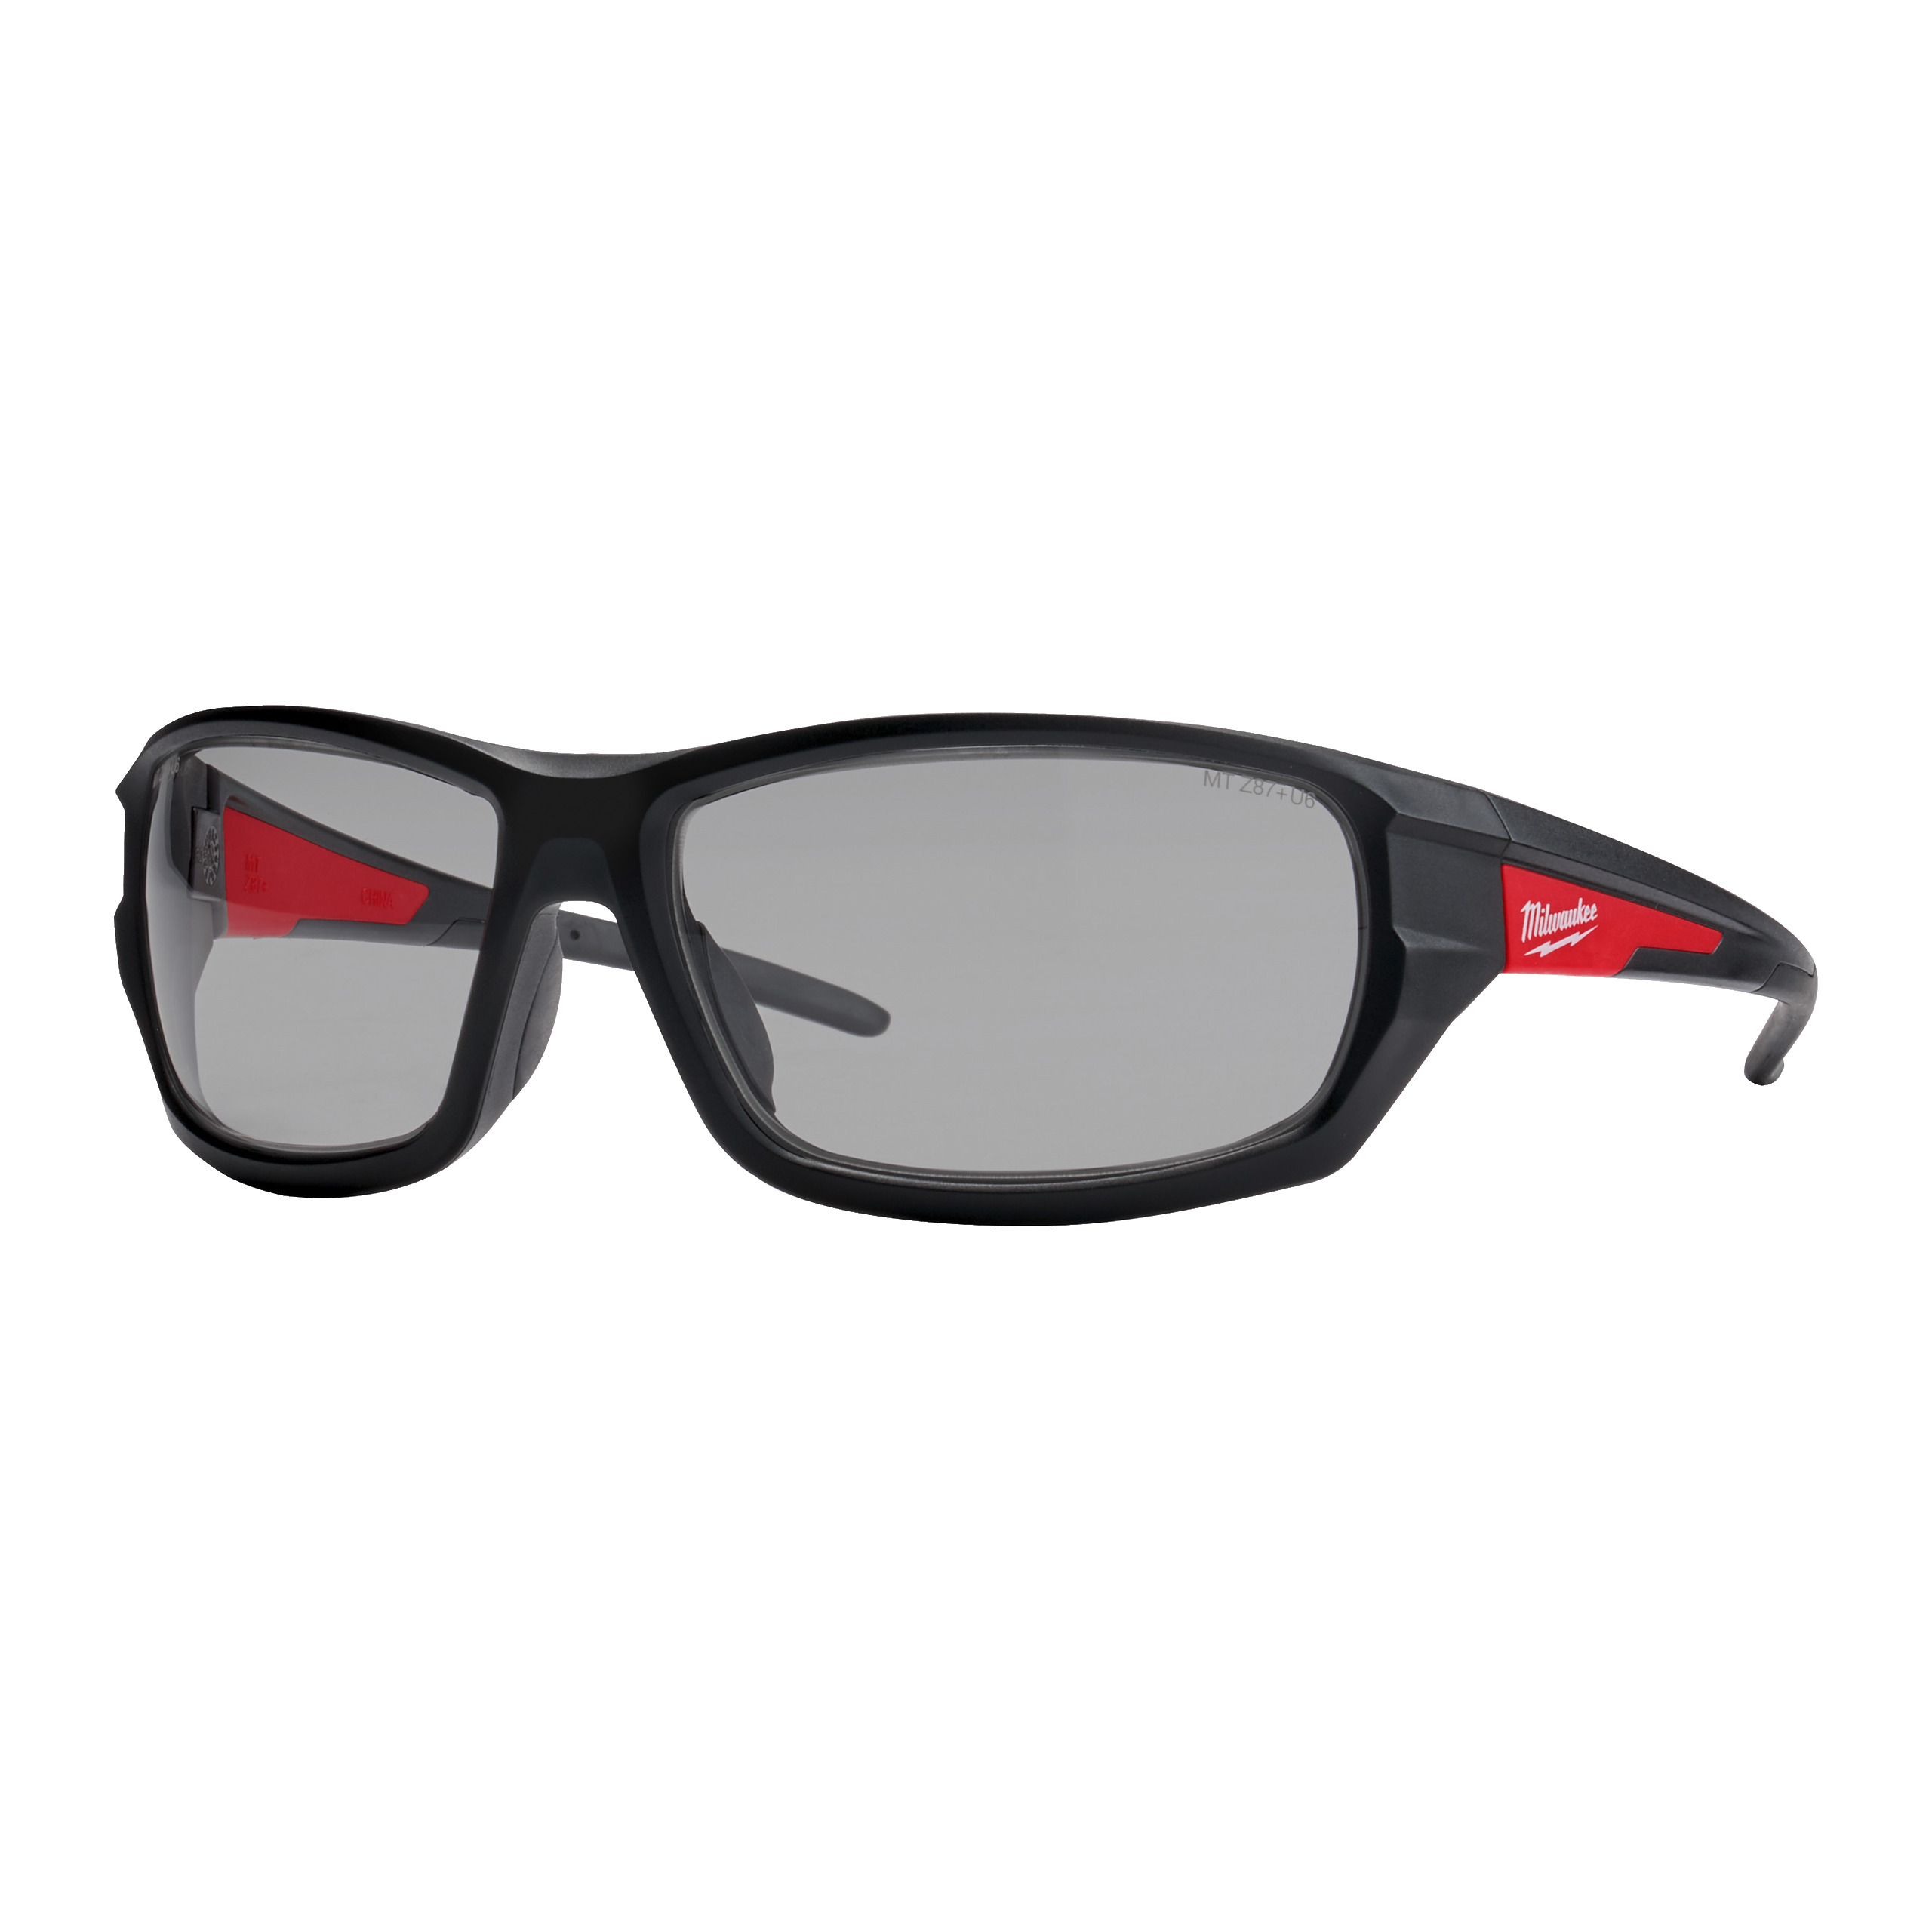 MILWAUKEE 4932478908 Výkonnostní ochranné brýle šedé - 1ks